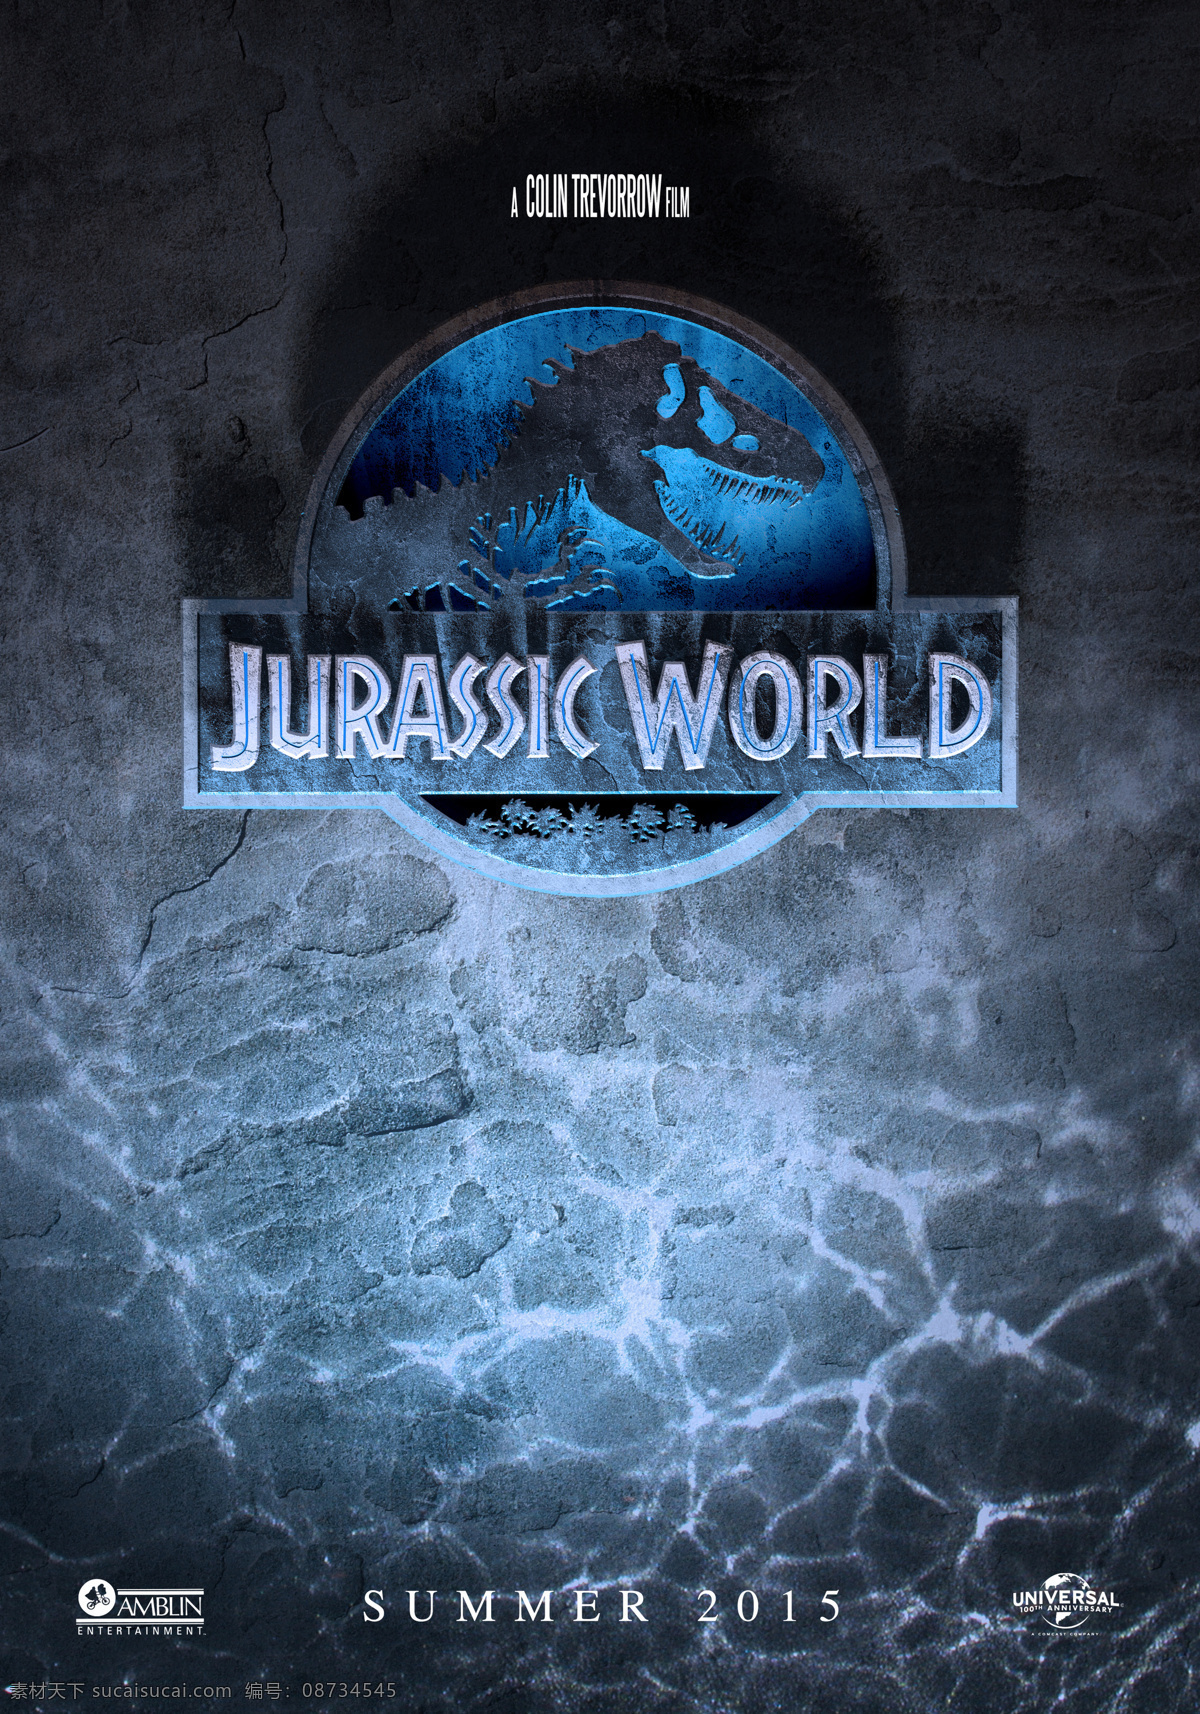 侏罗纪世界 电影 海报 壁纸 恐龙 科幻 惊悚 冒险 动作 侏罗纪 好莱坞 文化艺术 影视娱乐